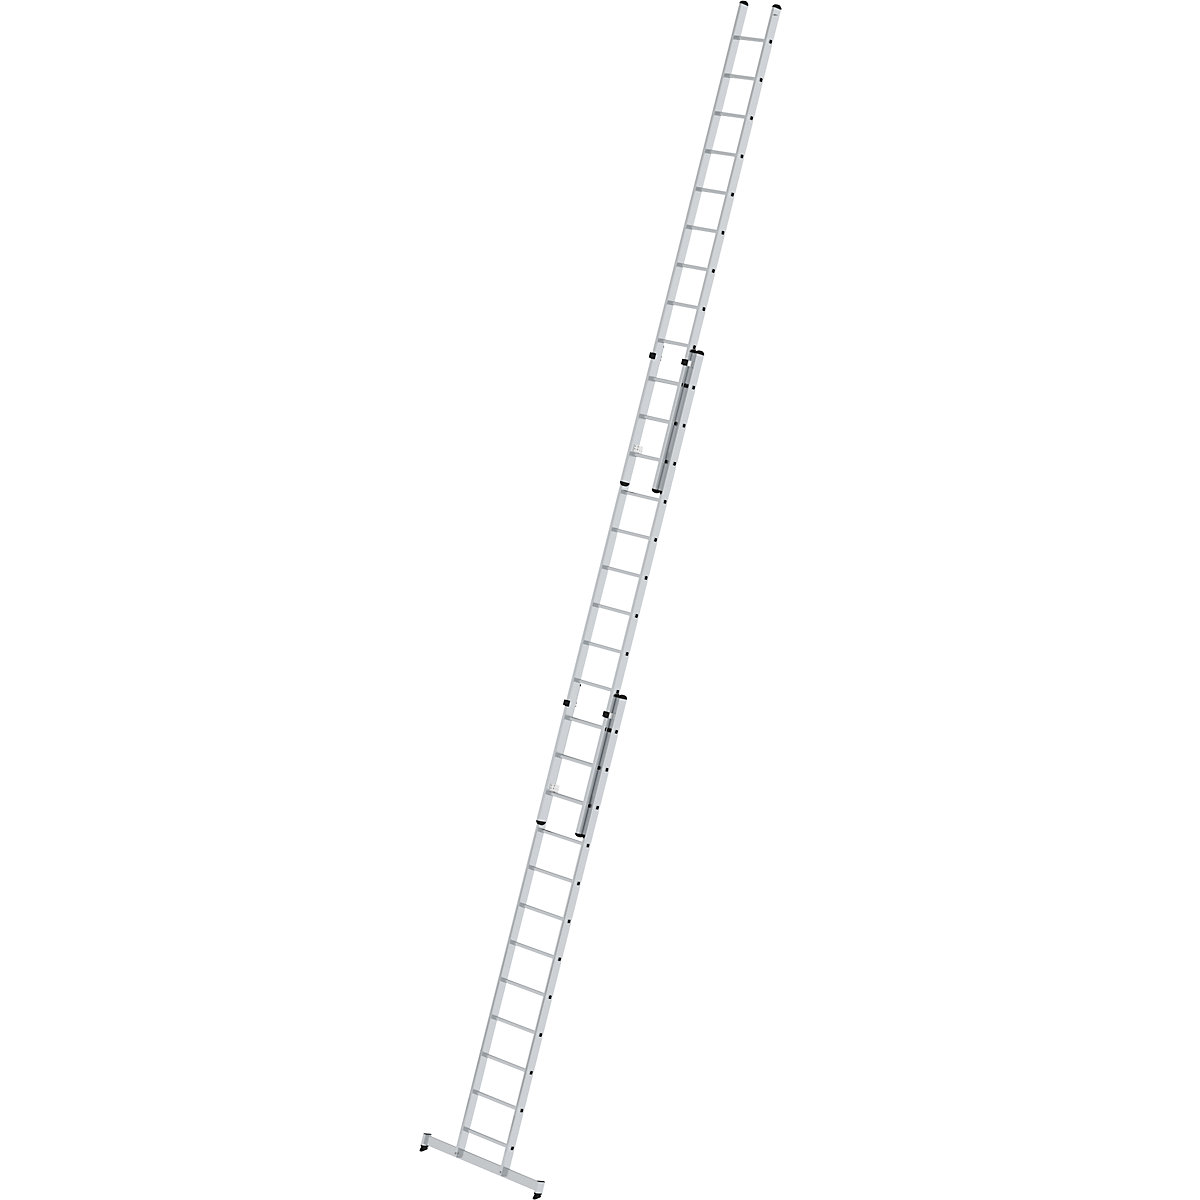 Échelle réglable en hauteur – MUNK, échelle coulissante, 3 parties avec traverse nivello®, 3 x 12 échelons-7